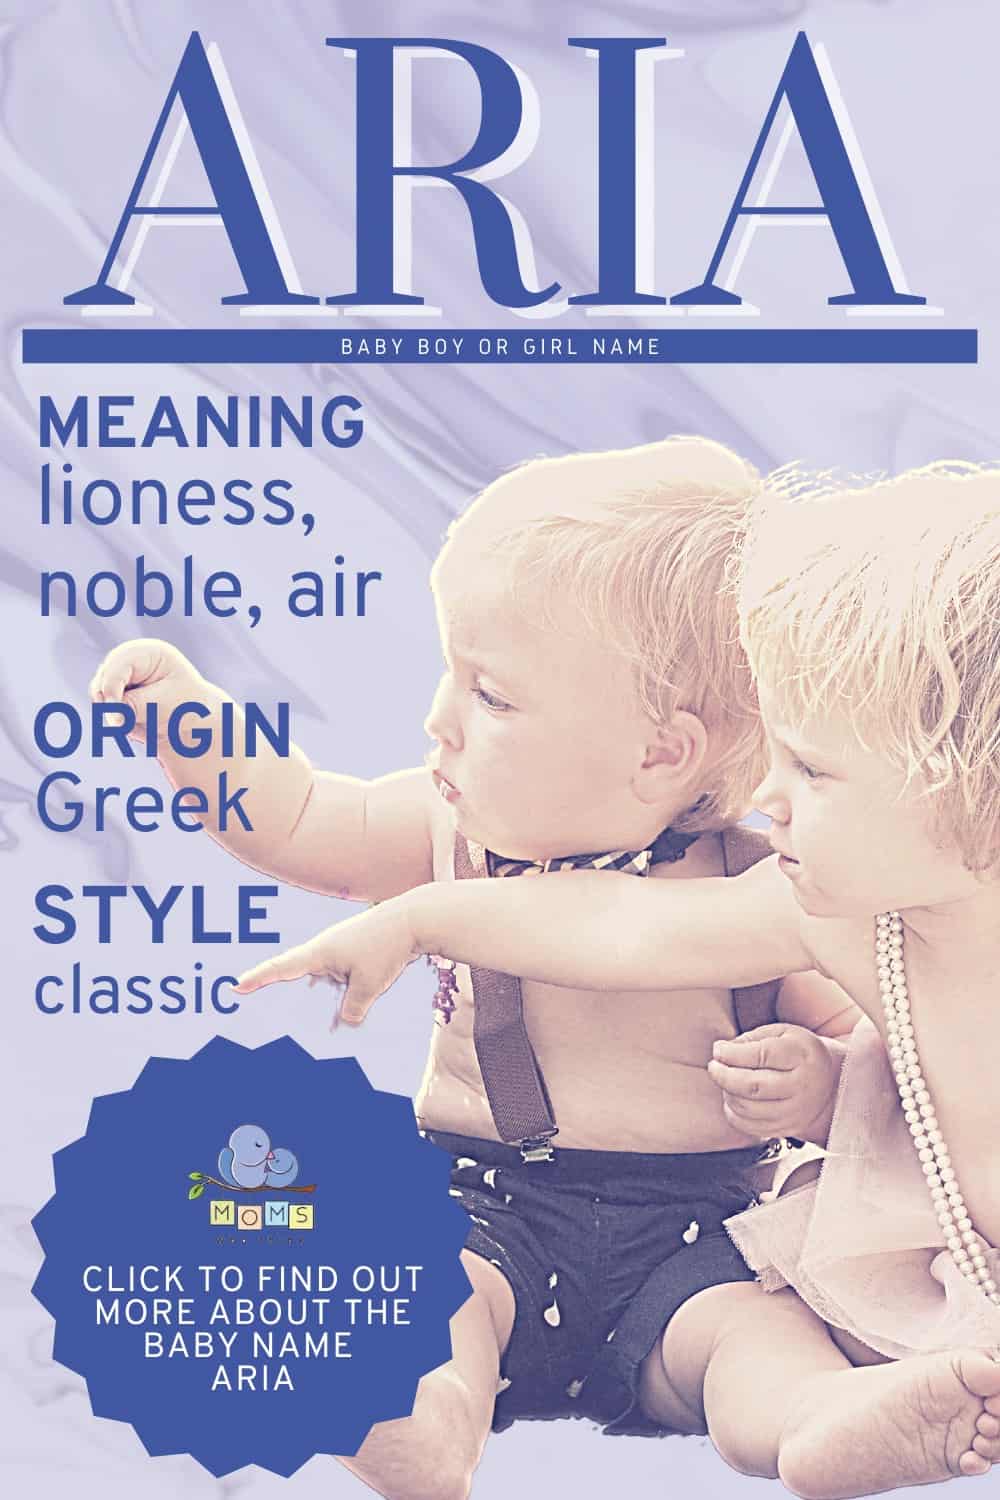 Baby name Aria